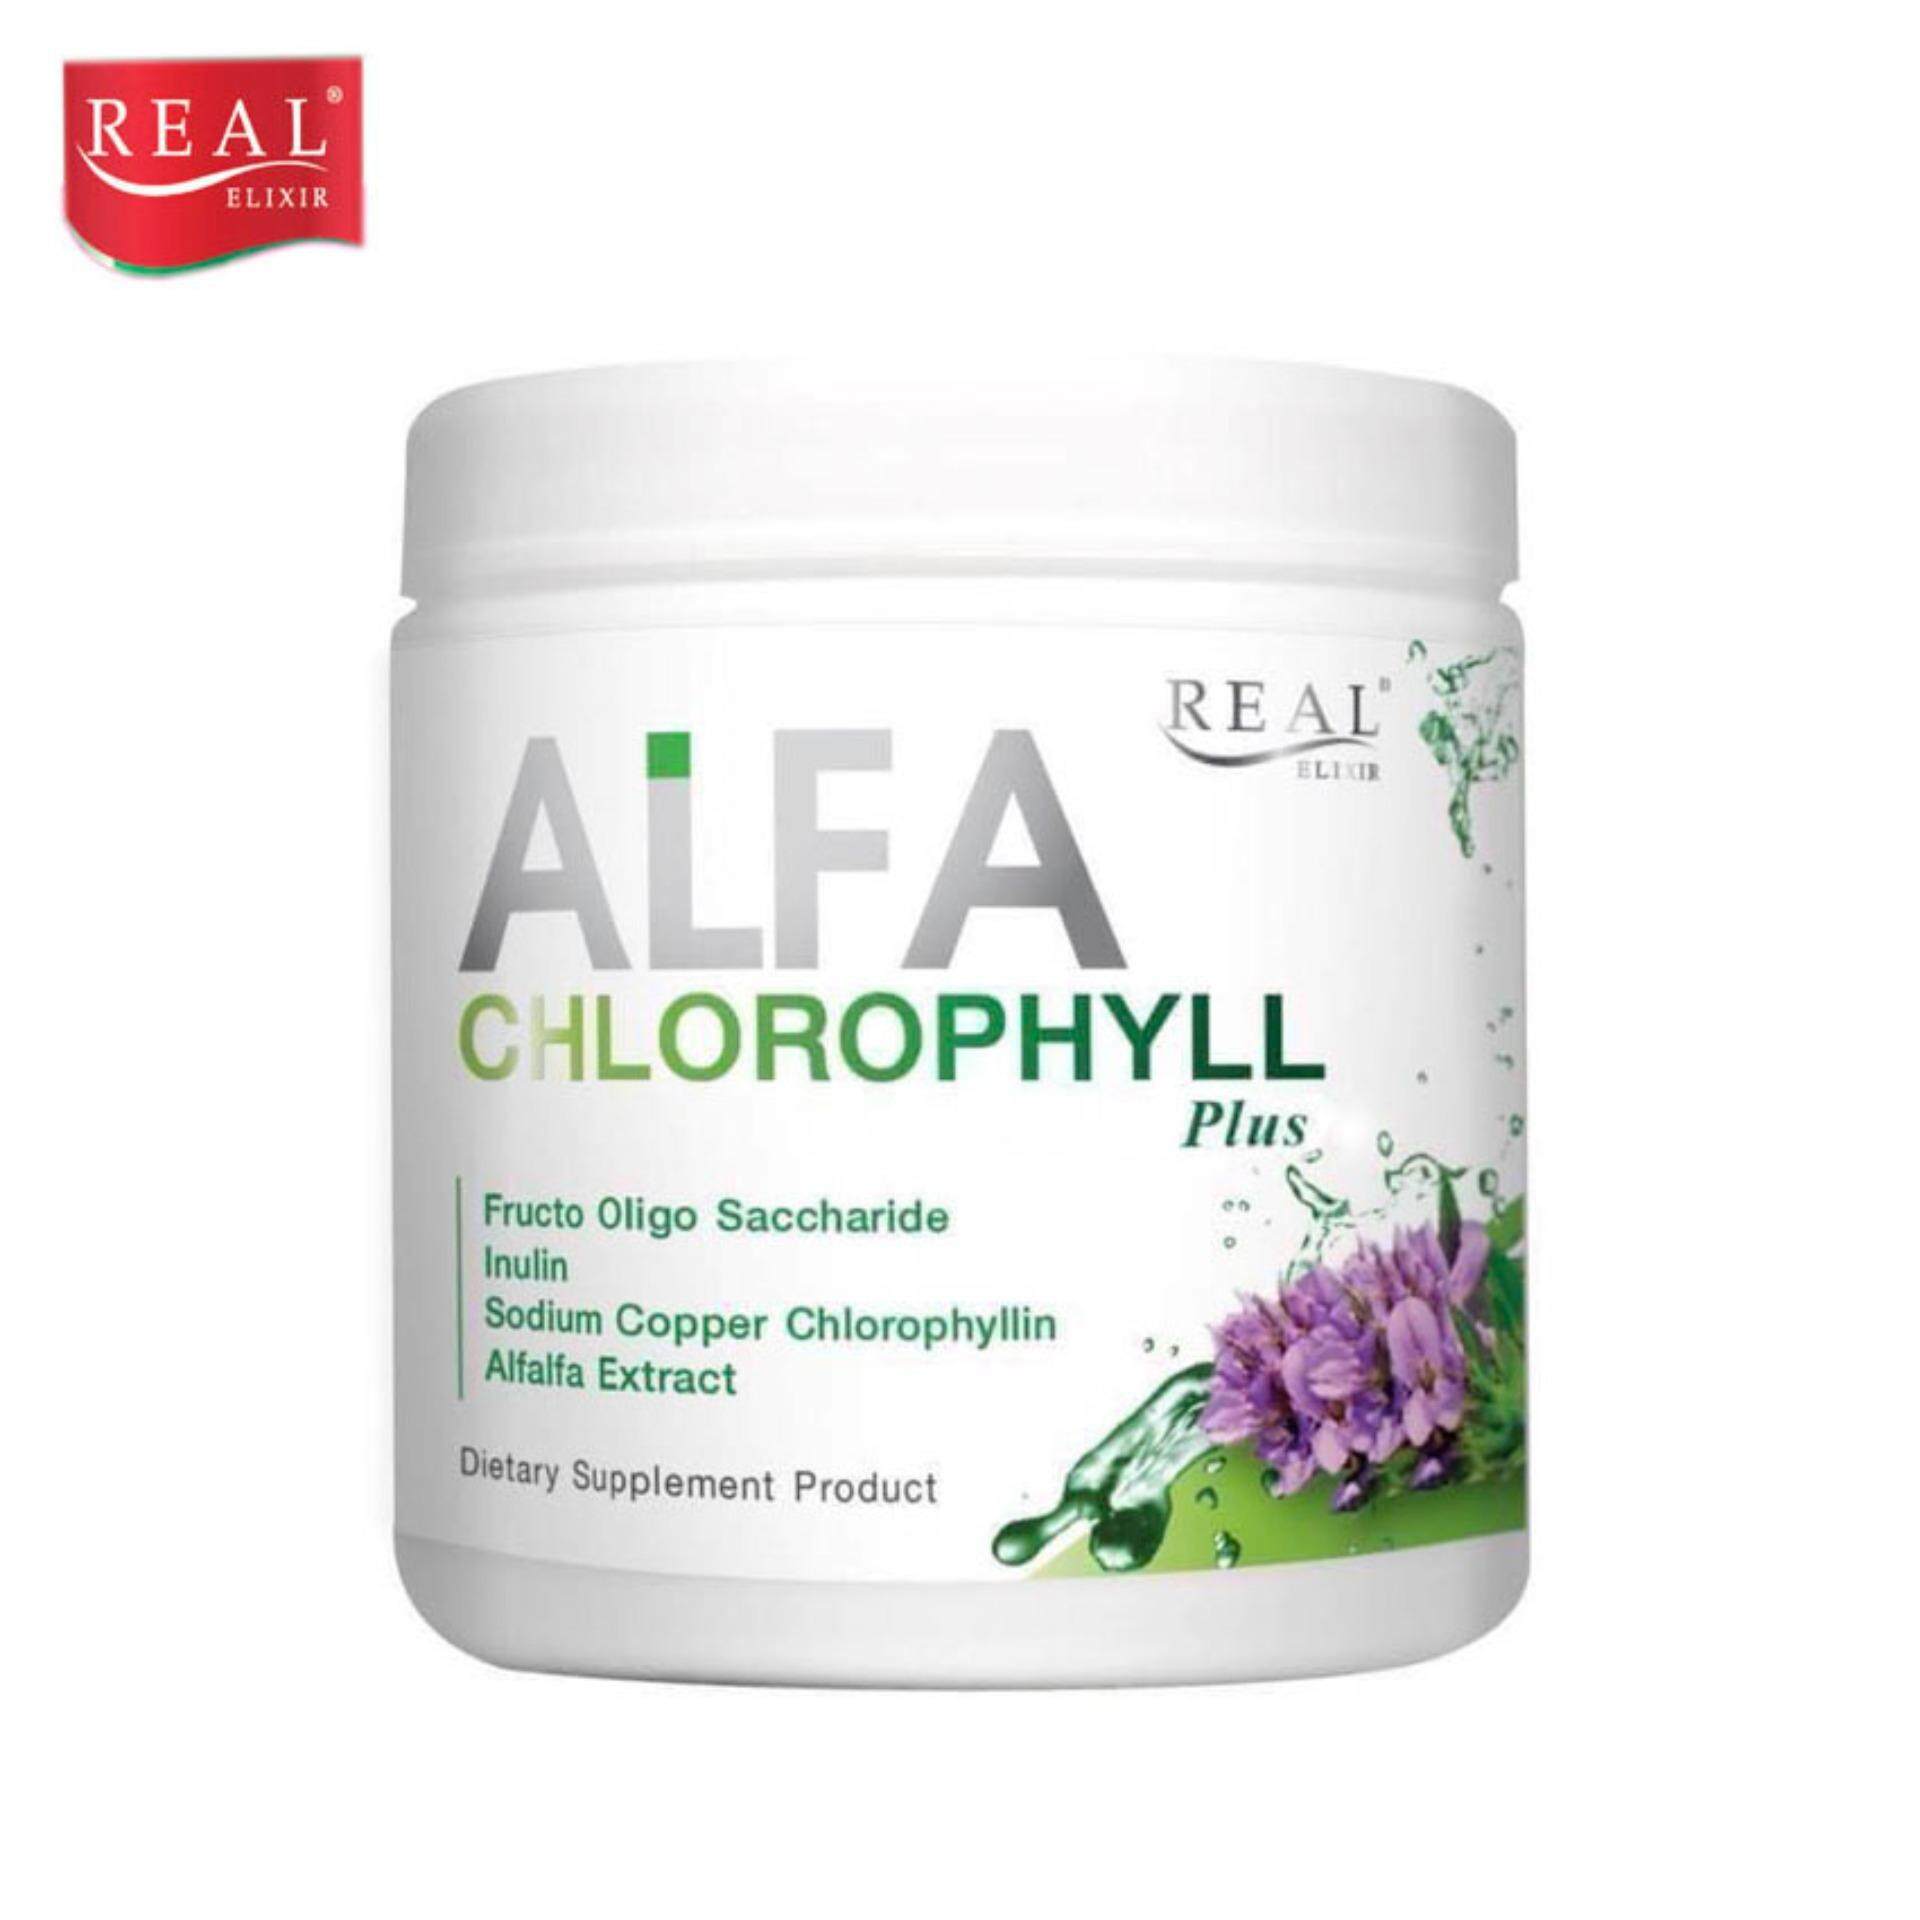 Real Elixir Alfa Chlorophyll Plus 100 g. เรียล อิลิคเซอร์ อัลฟ่า คลอโรฟิล ช่วยขับสารพิษออกจากร่างกาย ปรับสมดุลระบบขับถ่าย